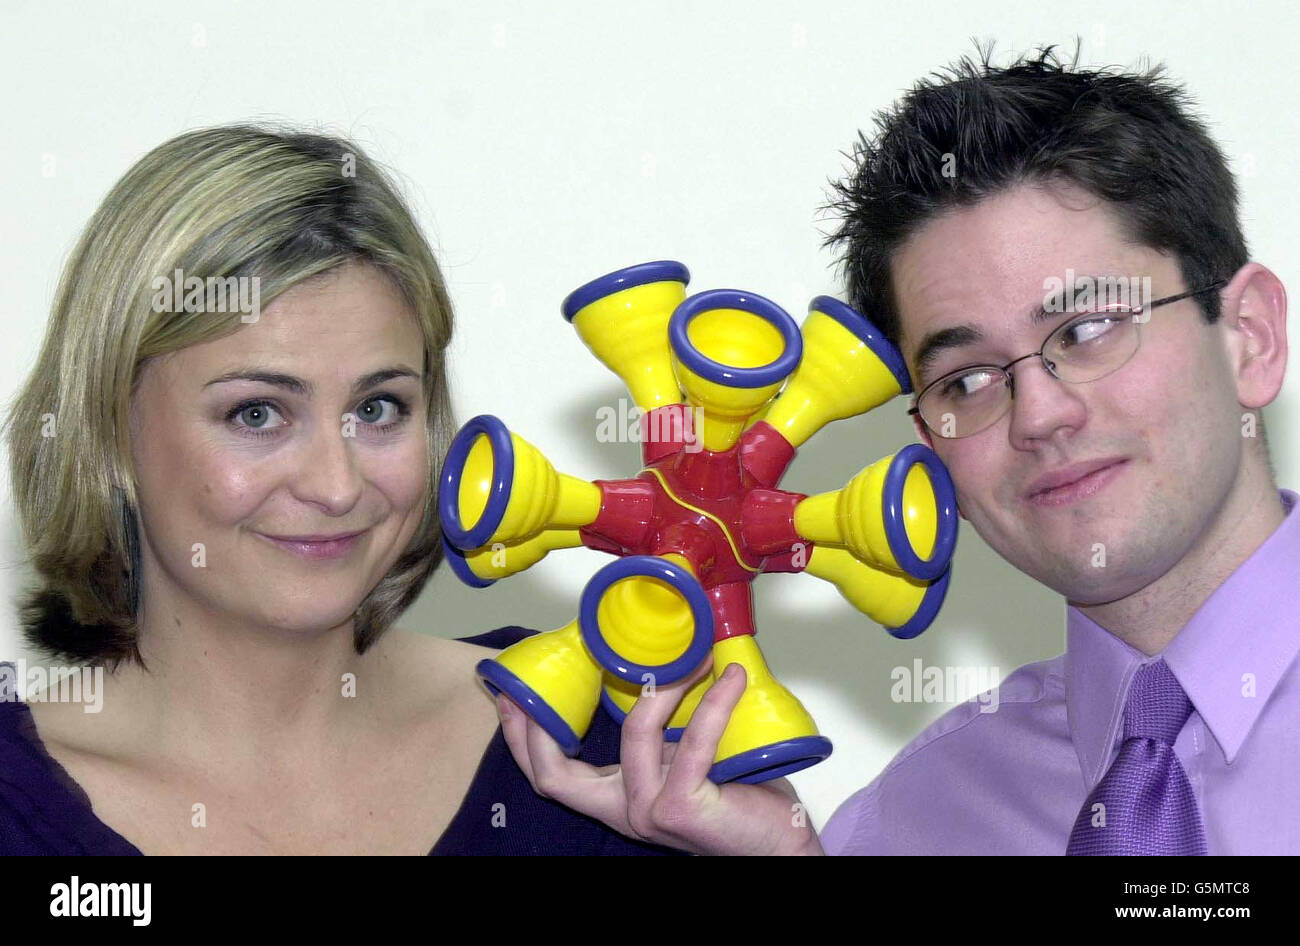 Philippa Forrester, présentateur de télévision, et Michael Cohen, 21 ans,  de Colchester, après avoir remporté le Fisher-Price Toy Design Award 2002,  à Londres. Le jeune designer a remporté le premier prix pour